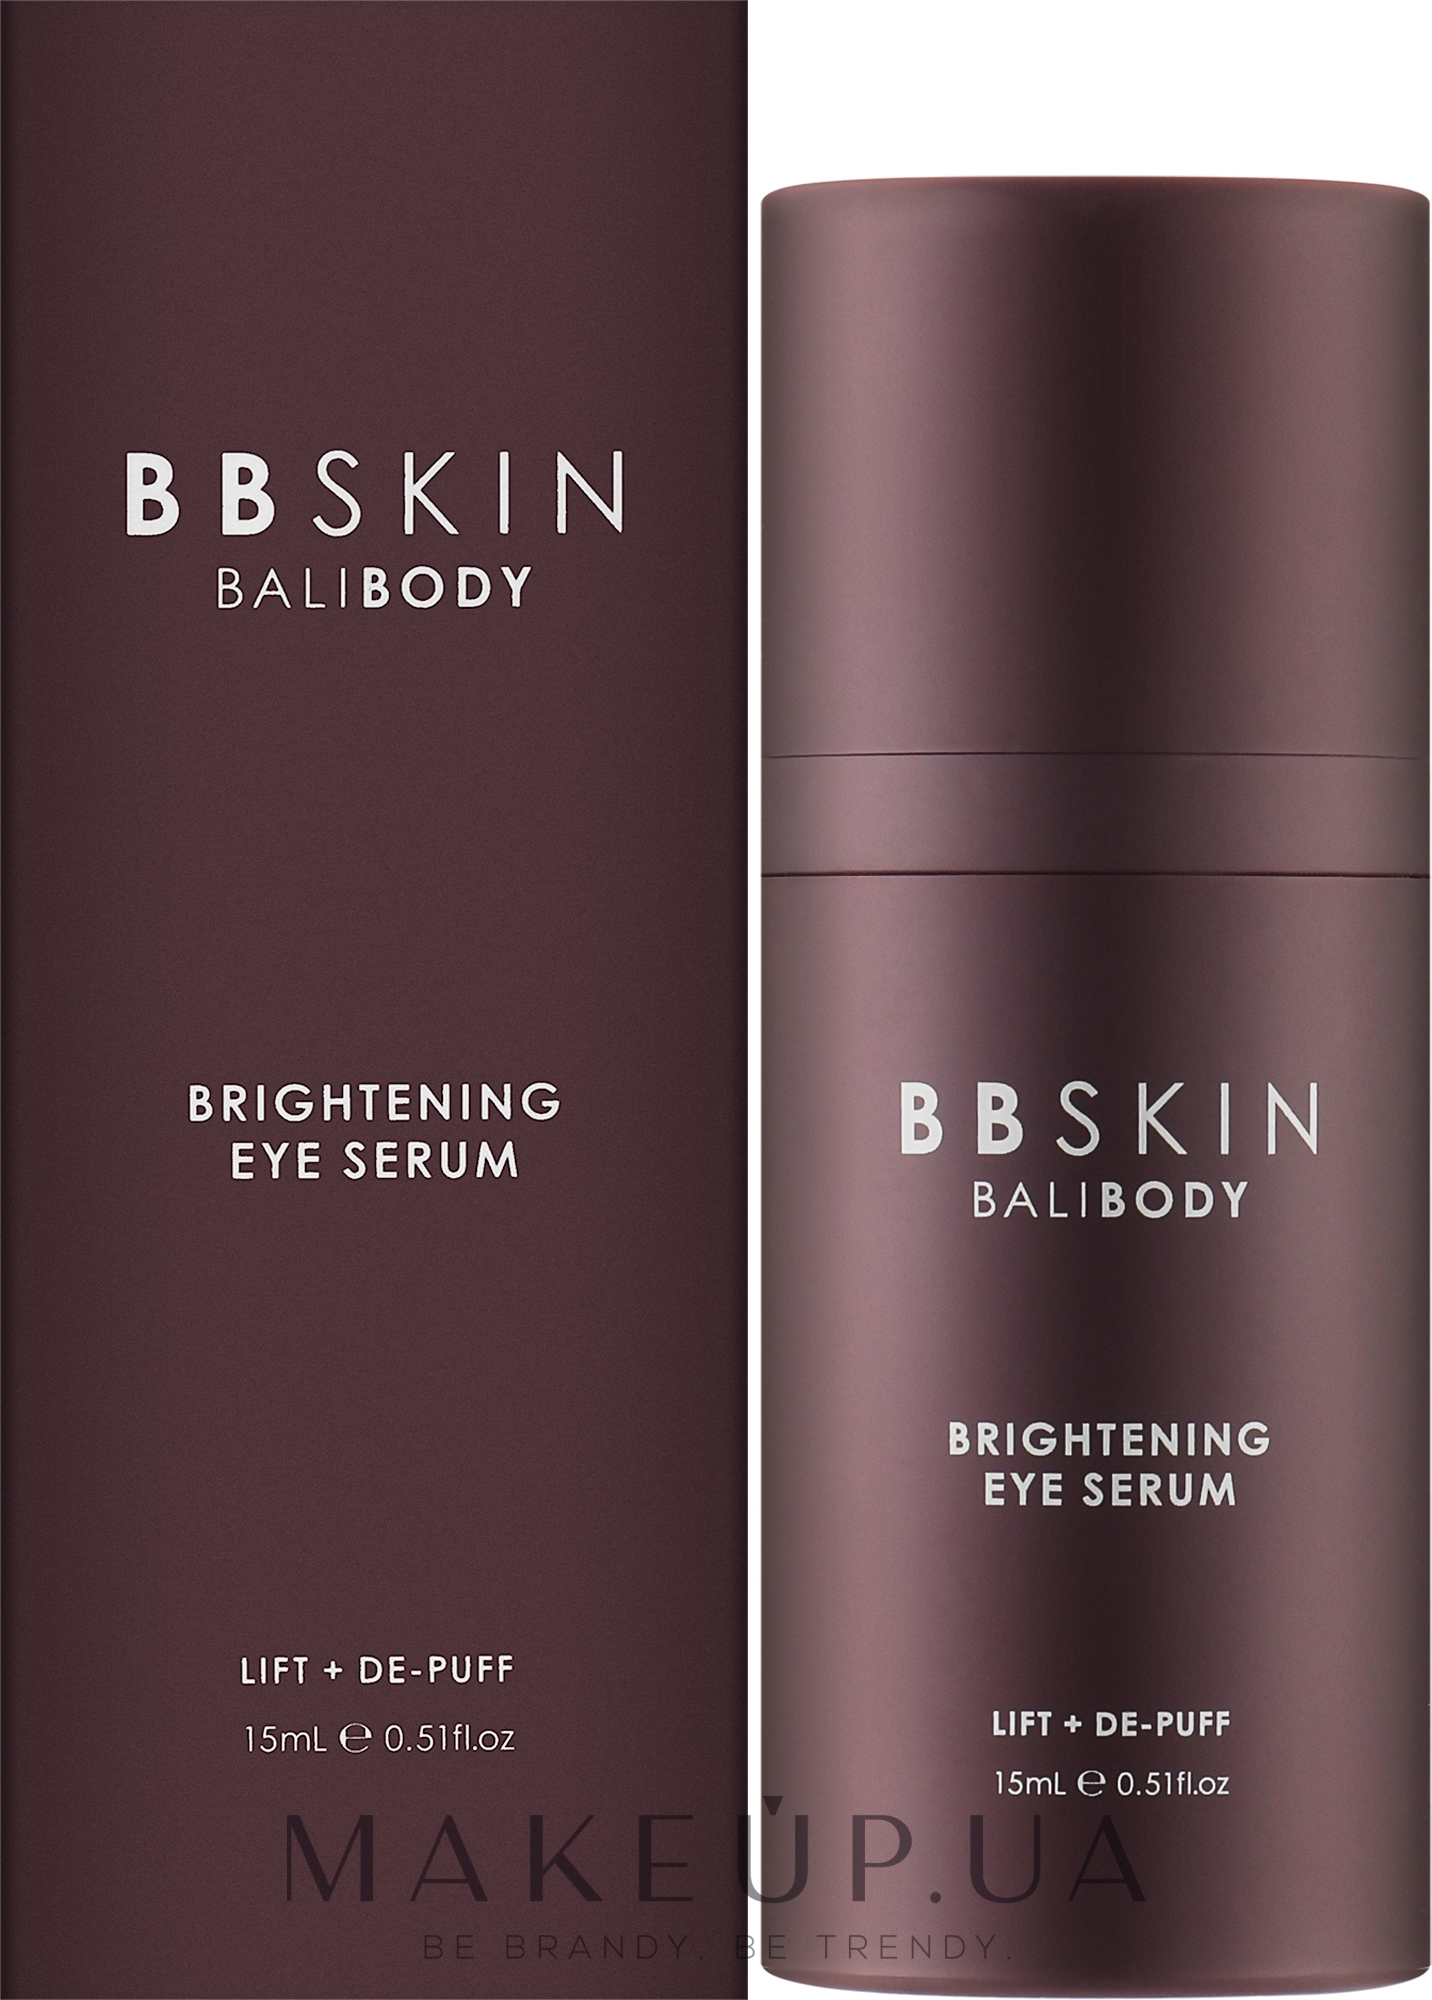 Освітлювальна сироватка для шкіри навколо очей - Bali Body BB Skin Brightening Eye Serum — фото 15ml